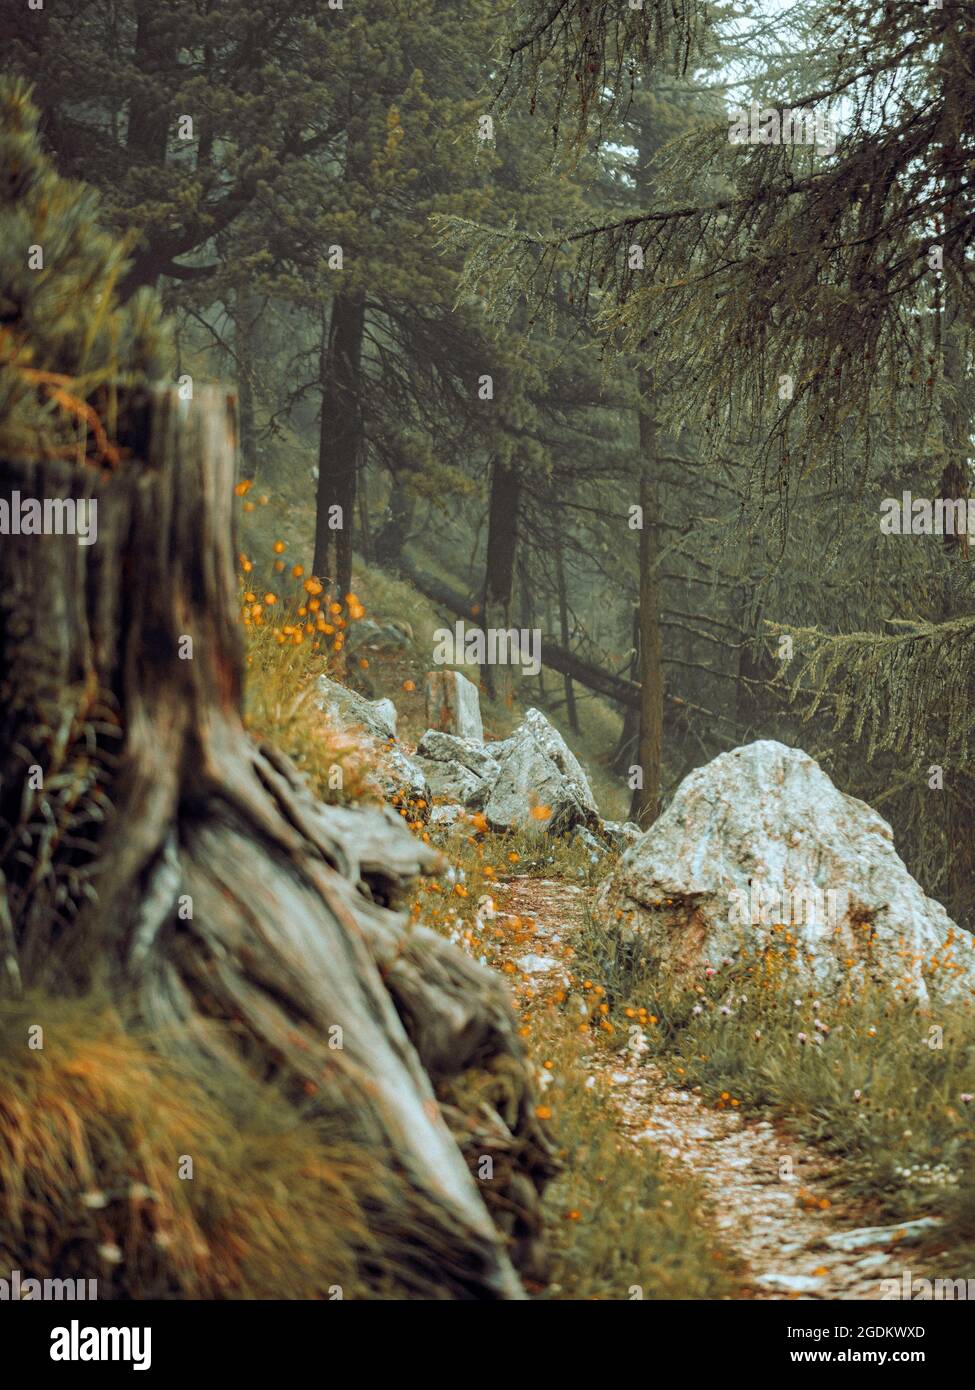 Densos y exuberantes bosques alpinos en Suiza. Los pinos, rocas, musgos y hierba cubren el suelo del bosque en un escenario natural perfecto. Foto de stock